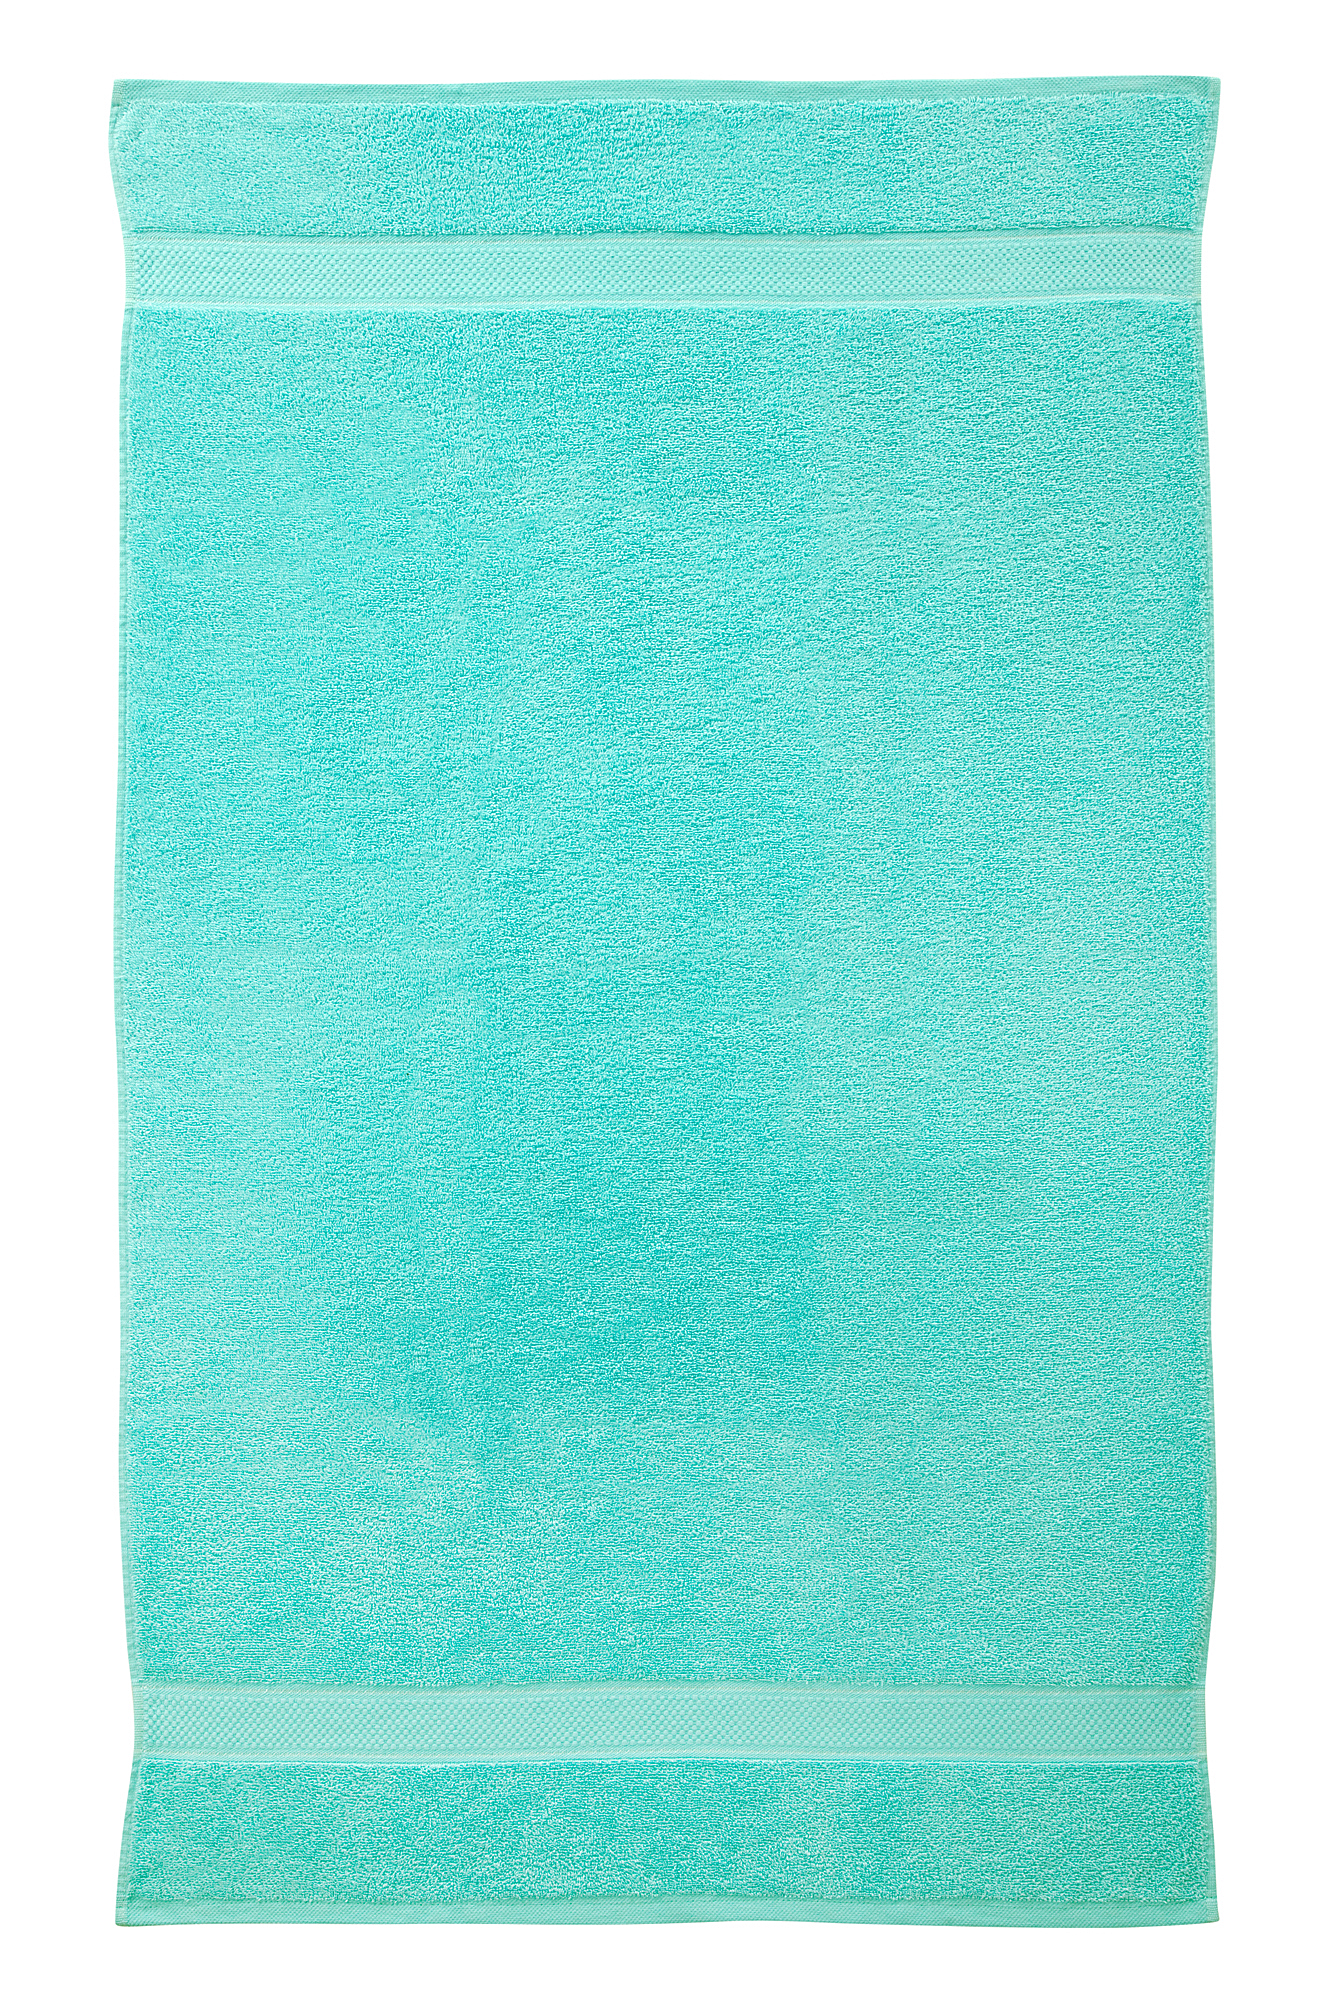 2 Pcs 100 % Cotton Premium Bath Sheet Towel Bale Set Turquoise Plain